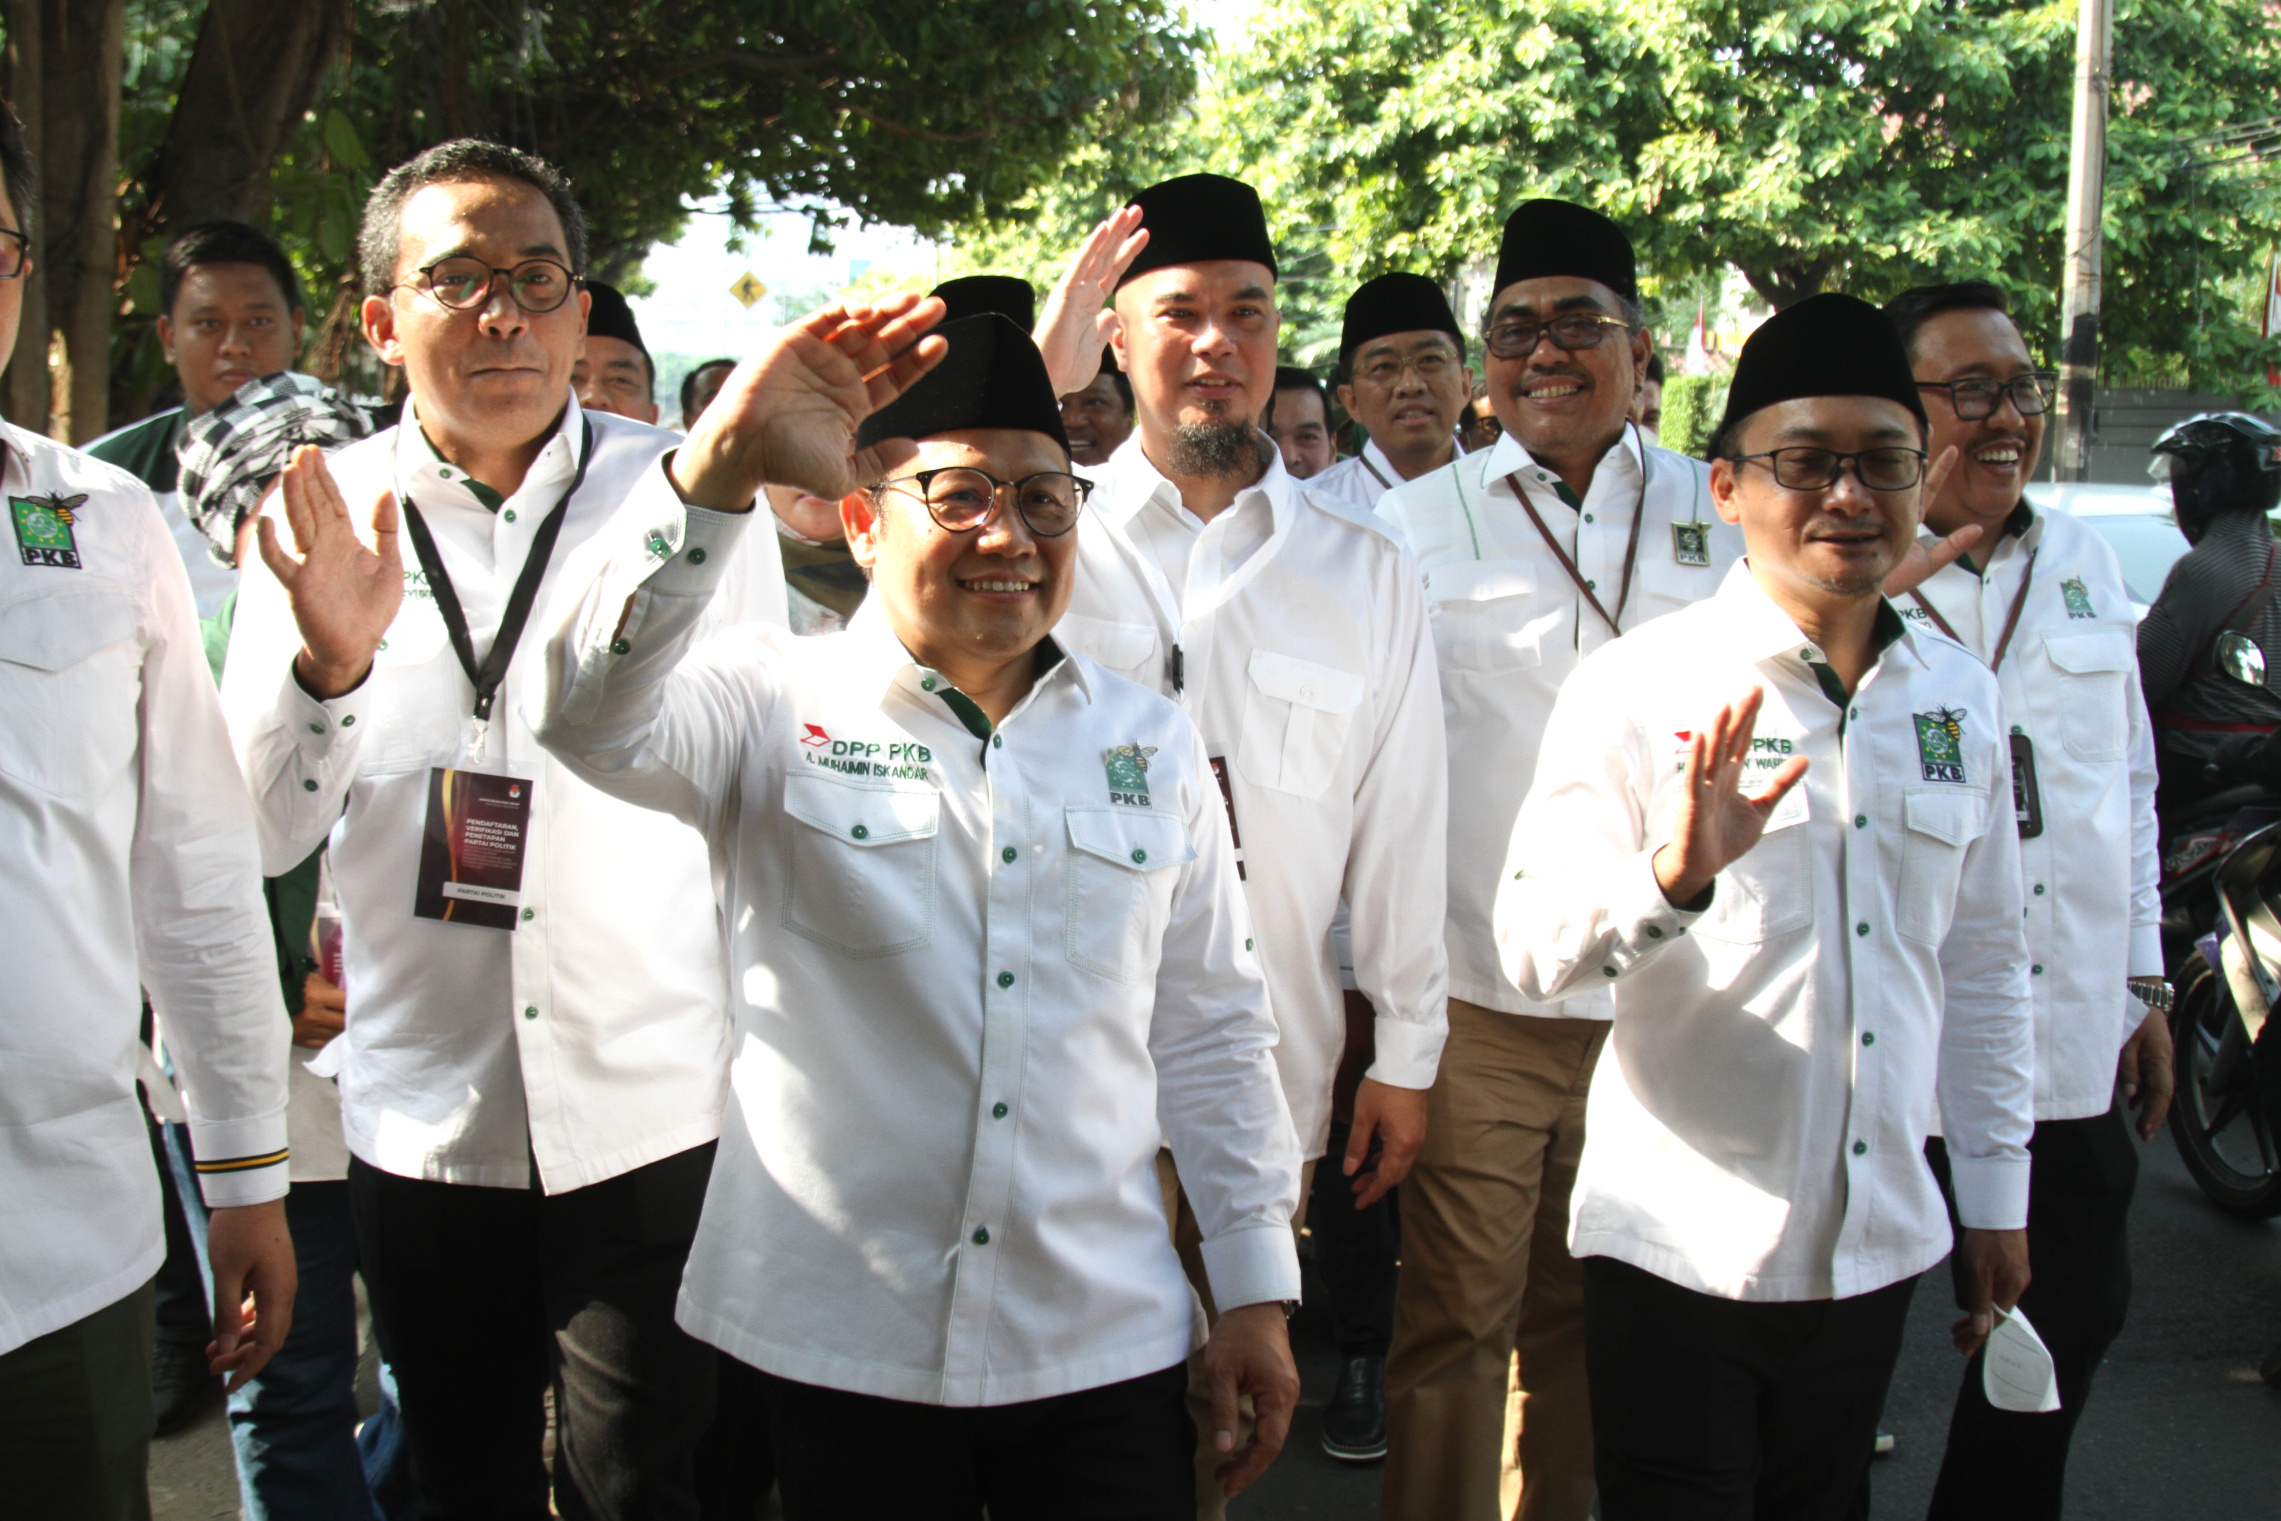 Ketua Umum PKB Muhaimin Iskandar, Ketua Gerindra Prabowo Subianto dan Ketua KPU RI Hasyim Asy'ari (Ashar/SinPo.id)